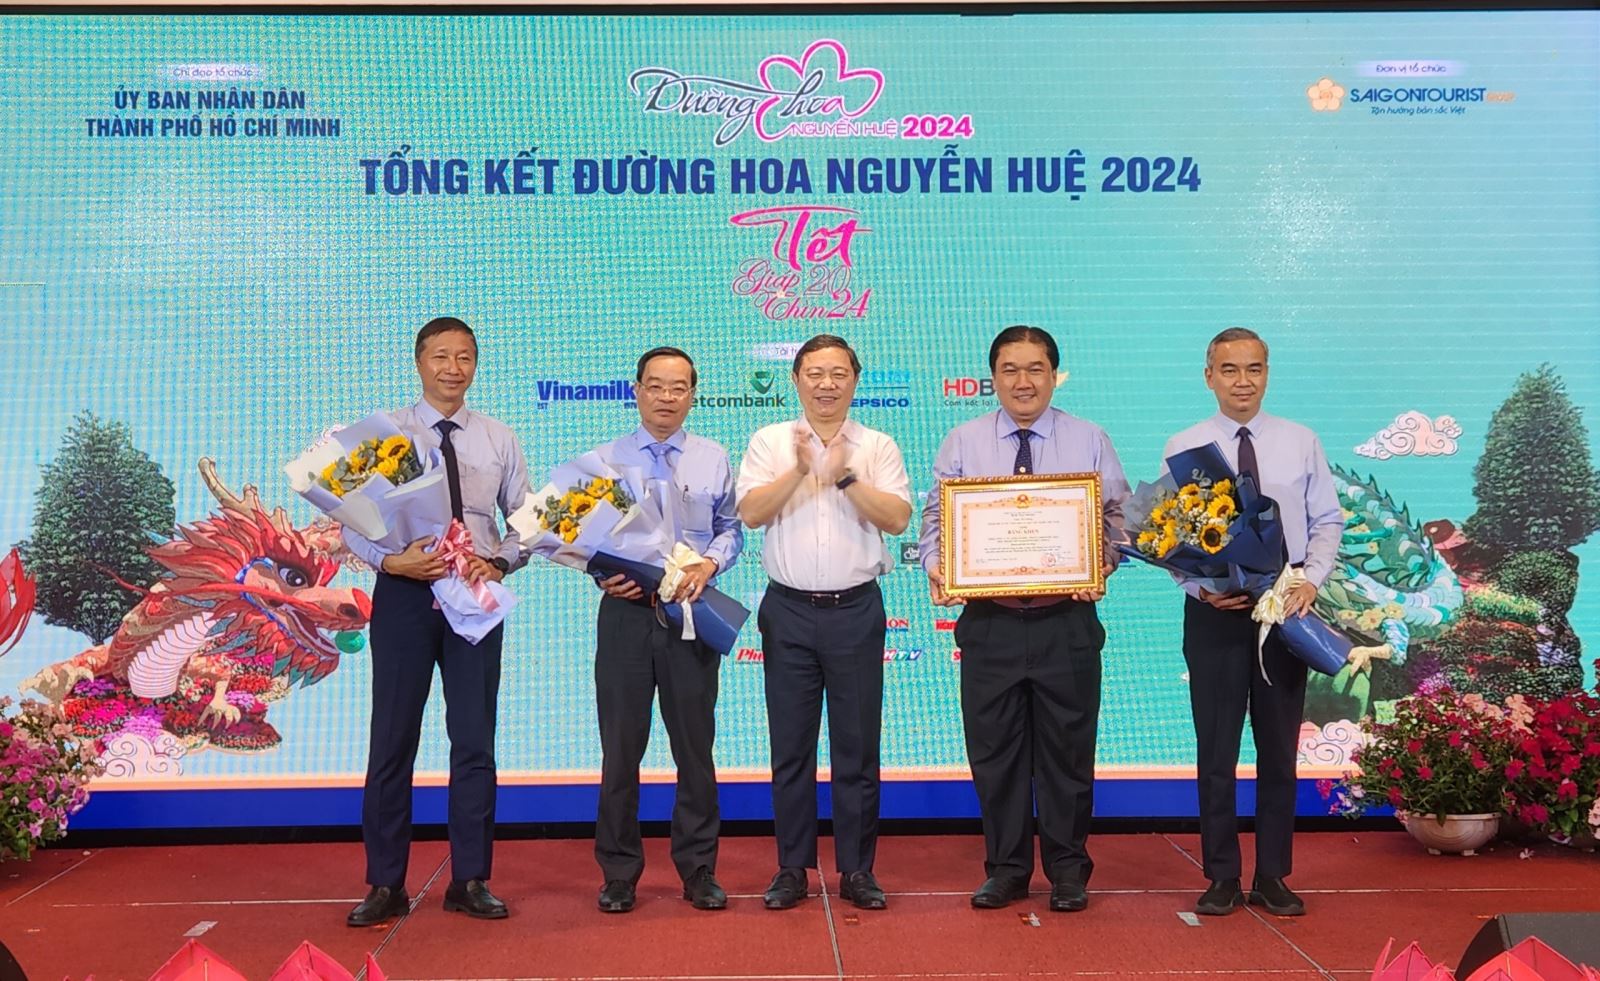  TP Hồ Chí Minh: Đường hoa Tết 2024 là đường hoa đẹp nhất trong các năm 